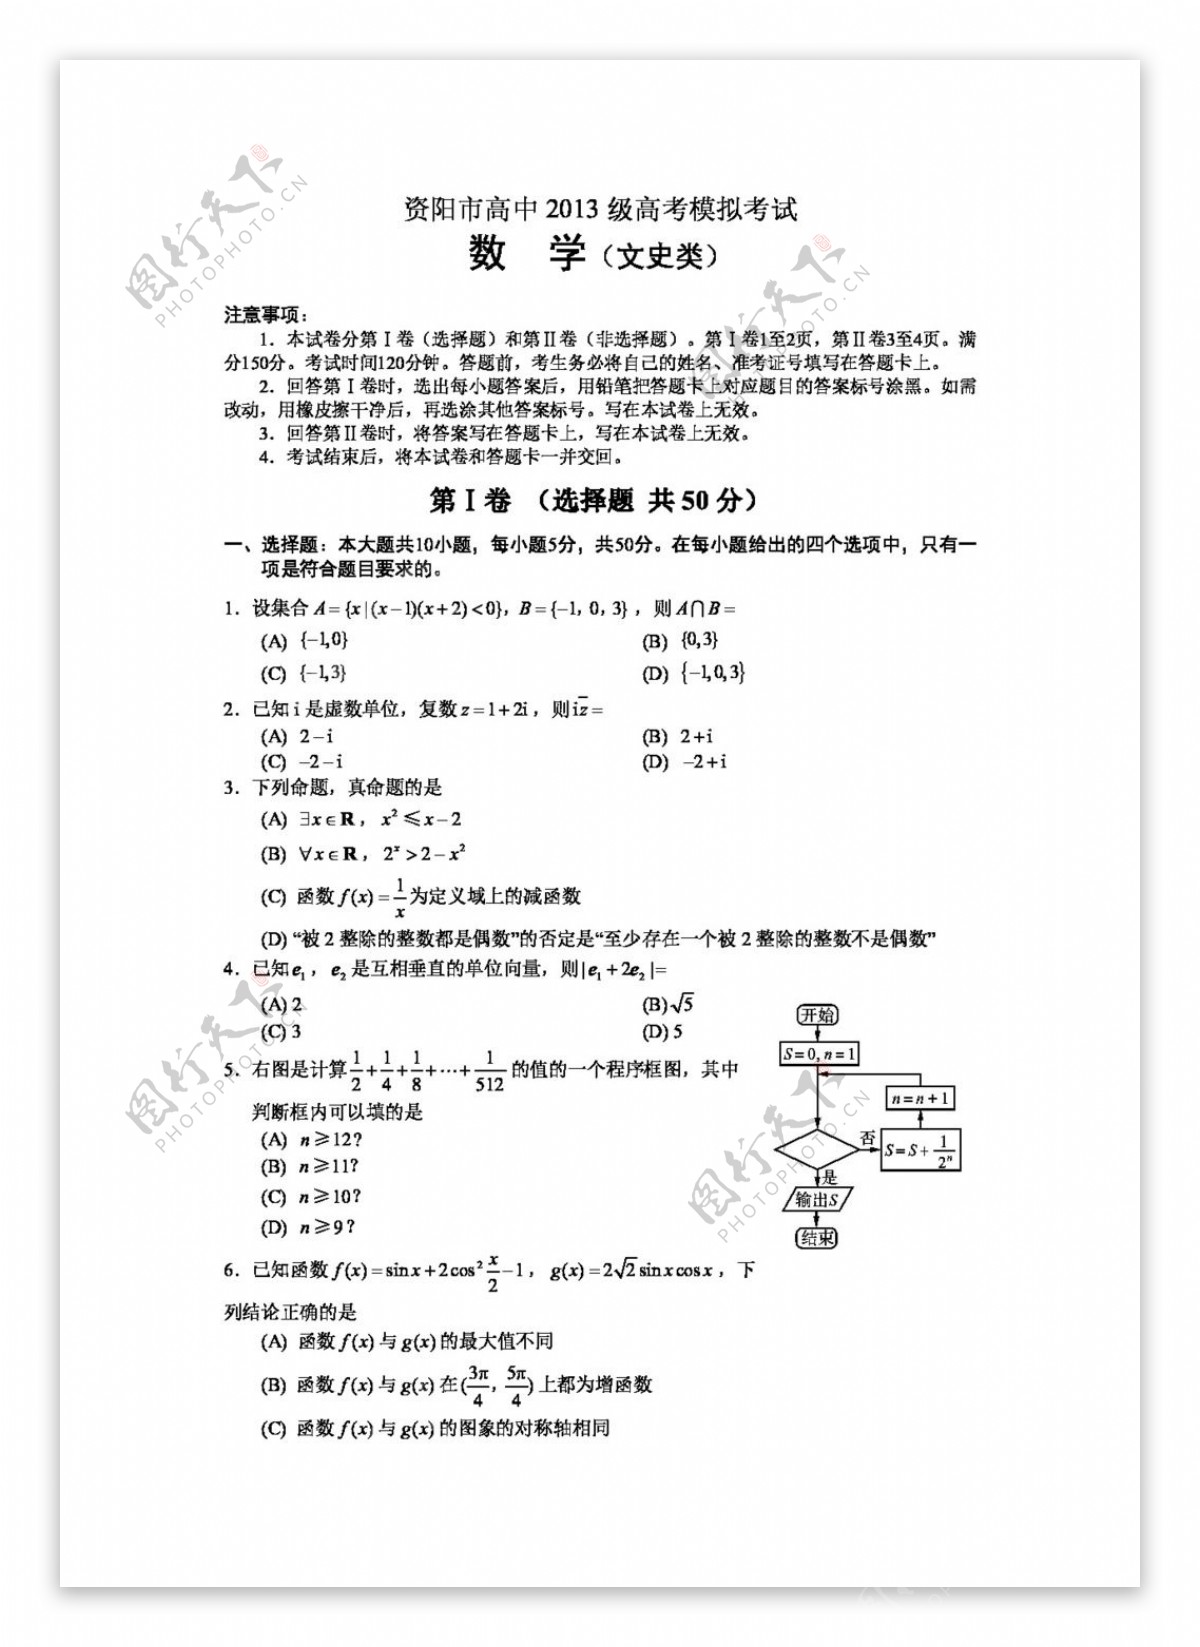 数学人教版四川省资阳市高中2013级高考模拟考试数学文史类